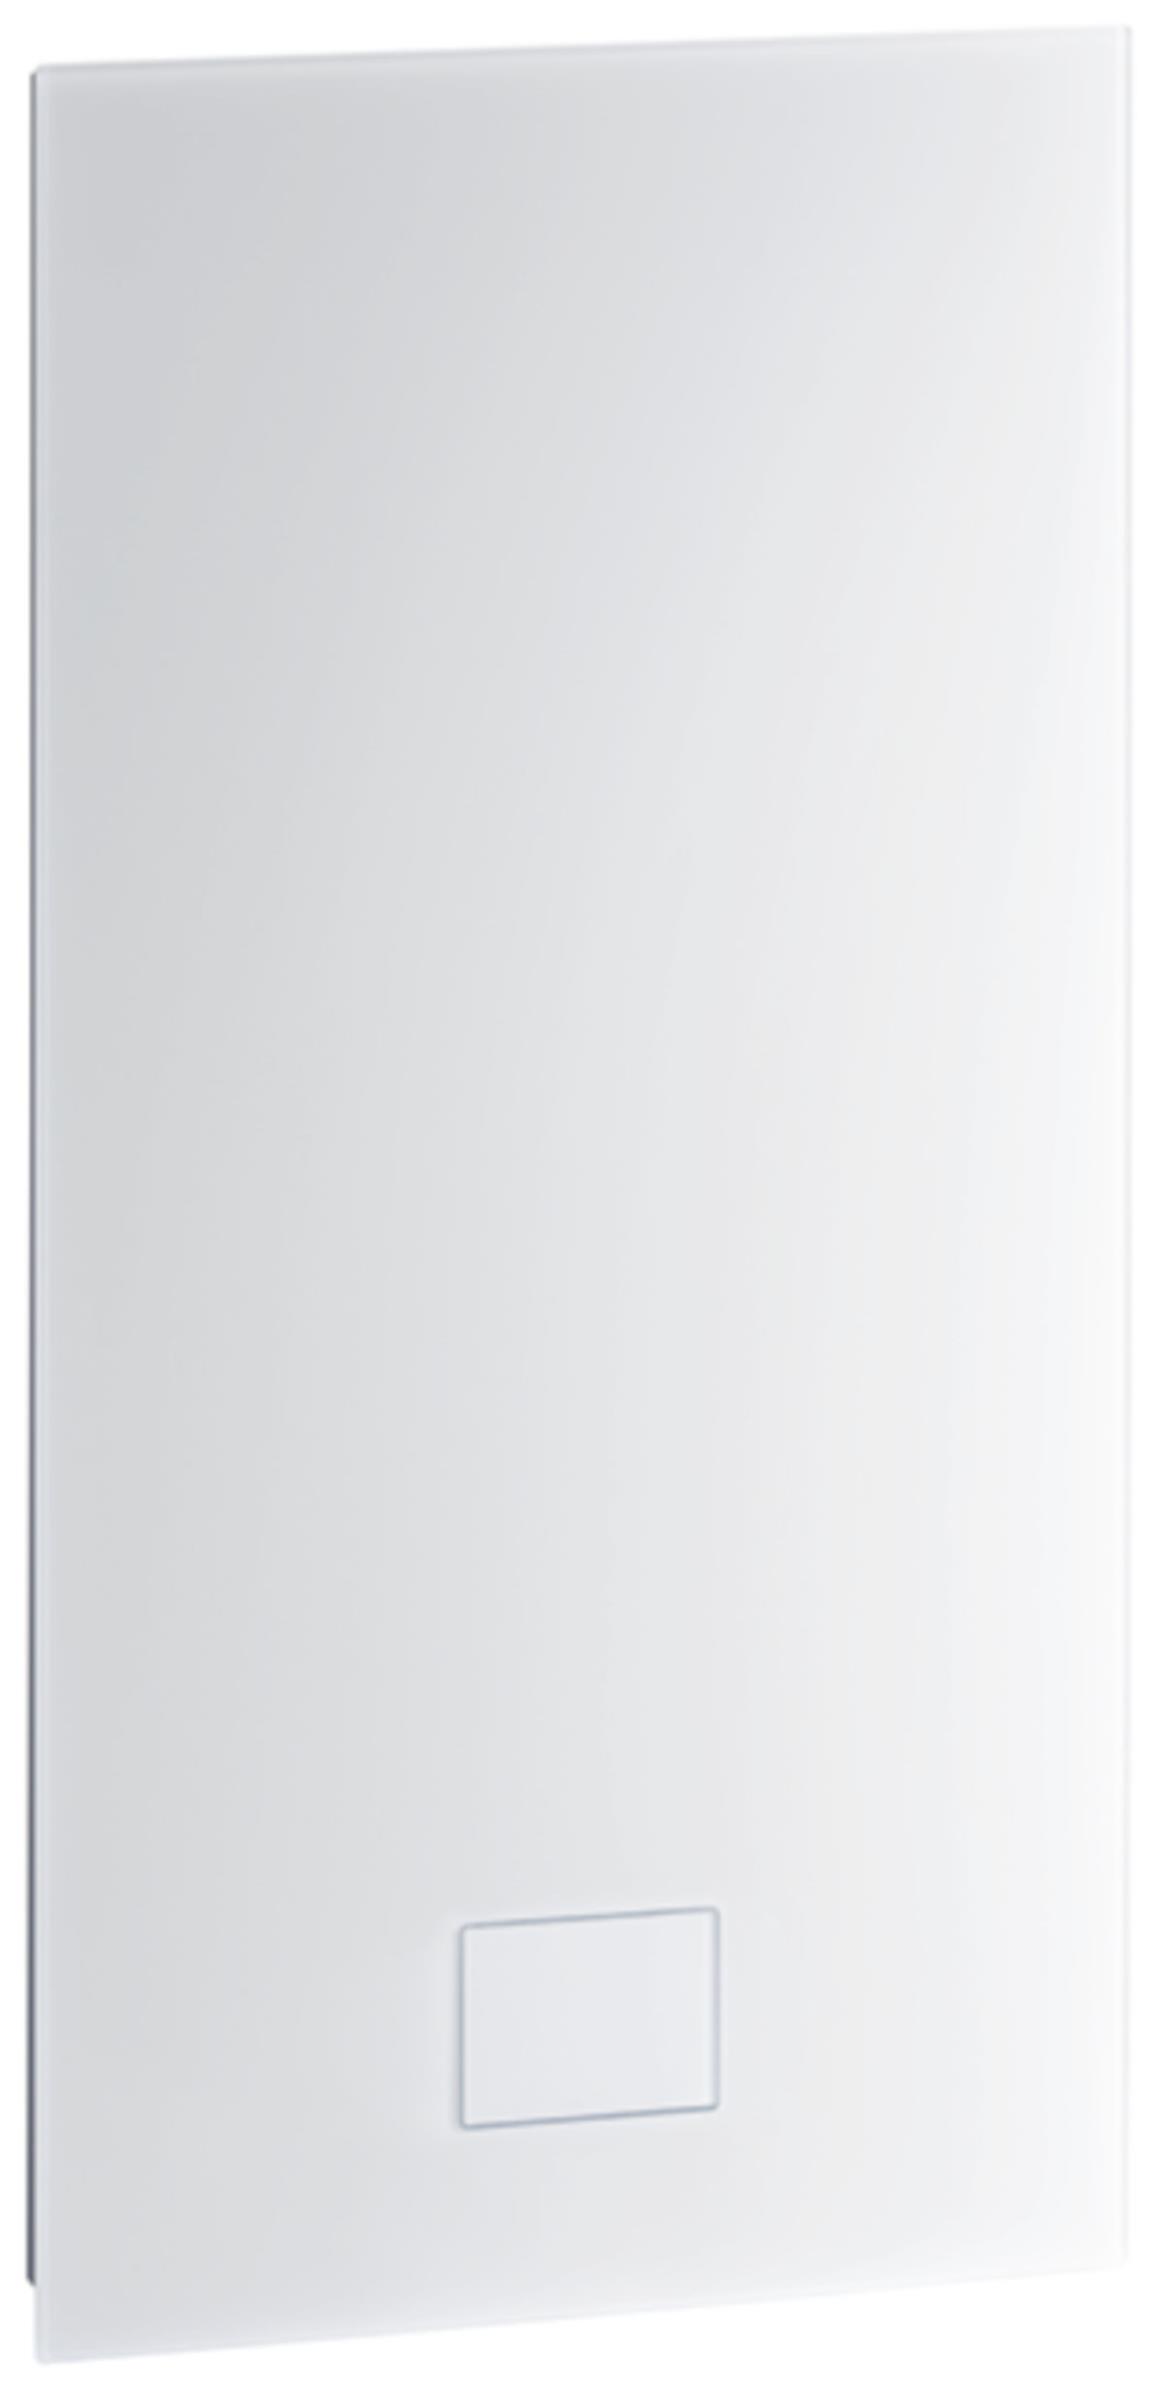 ZEWO Kompakt LG 75 H Geräteabdeckung, vollflächig aus Glas, Frontalansicht, auf weißem Hintergrund